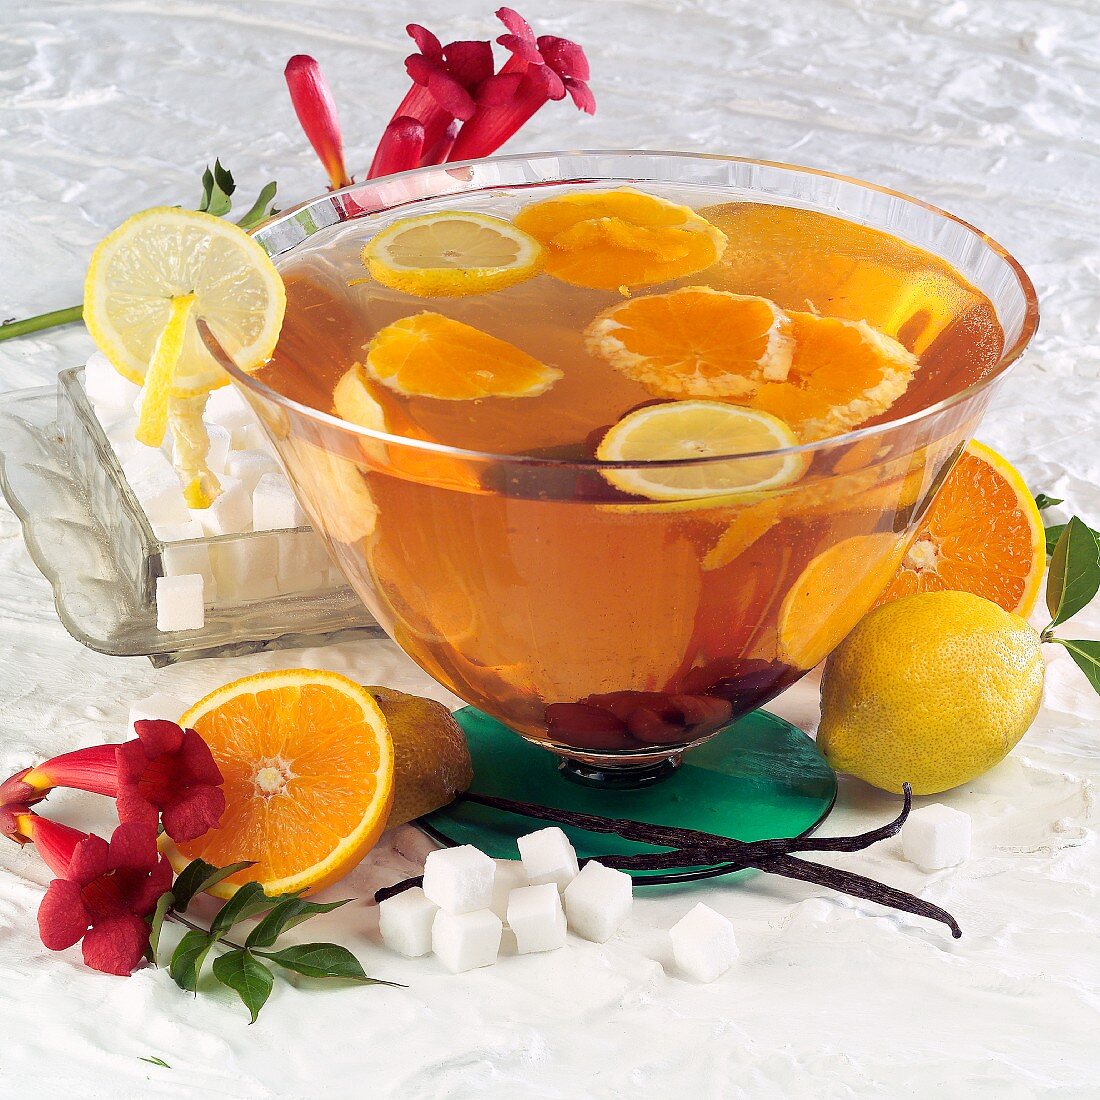 Orangebowle in einer Bowleschale, daneben Zutaten